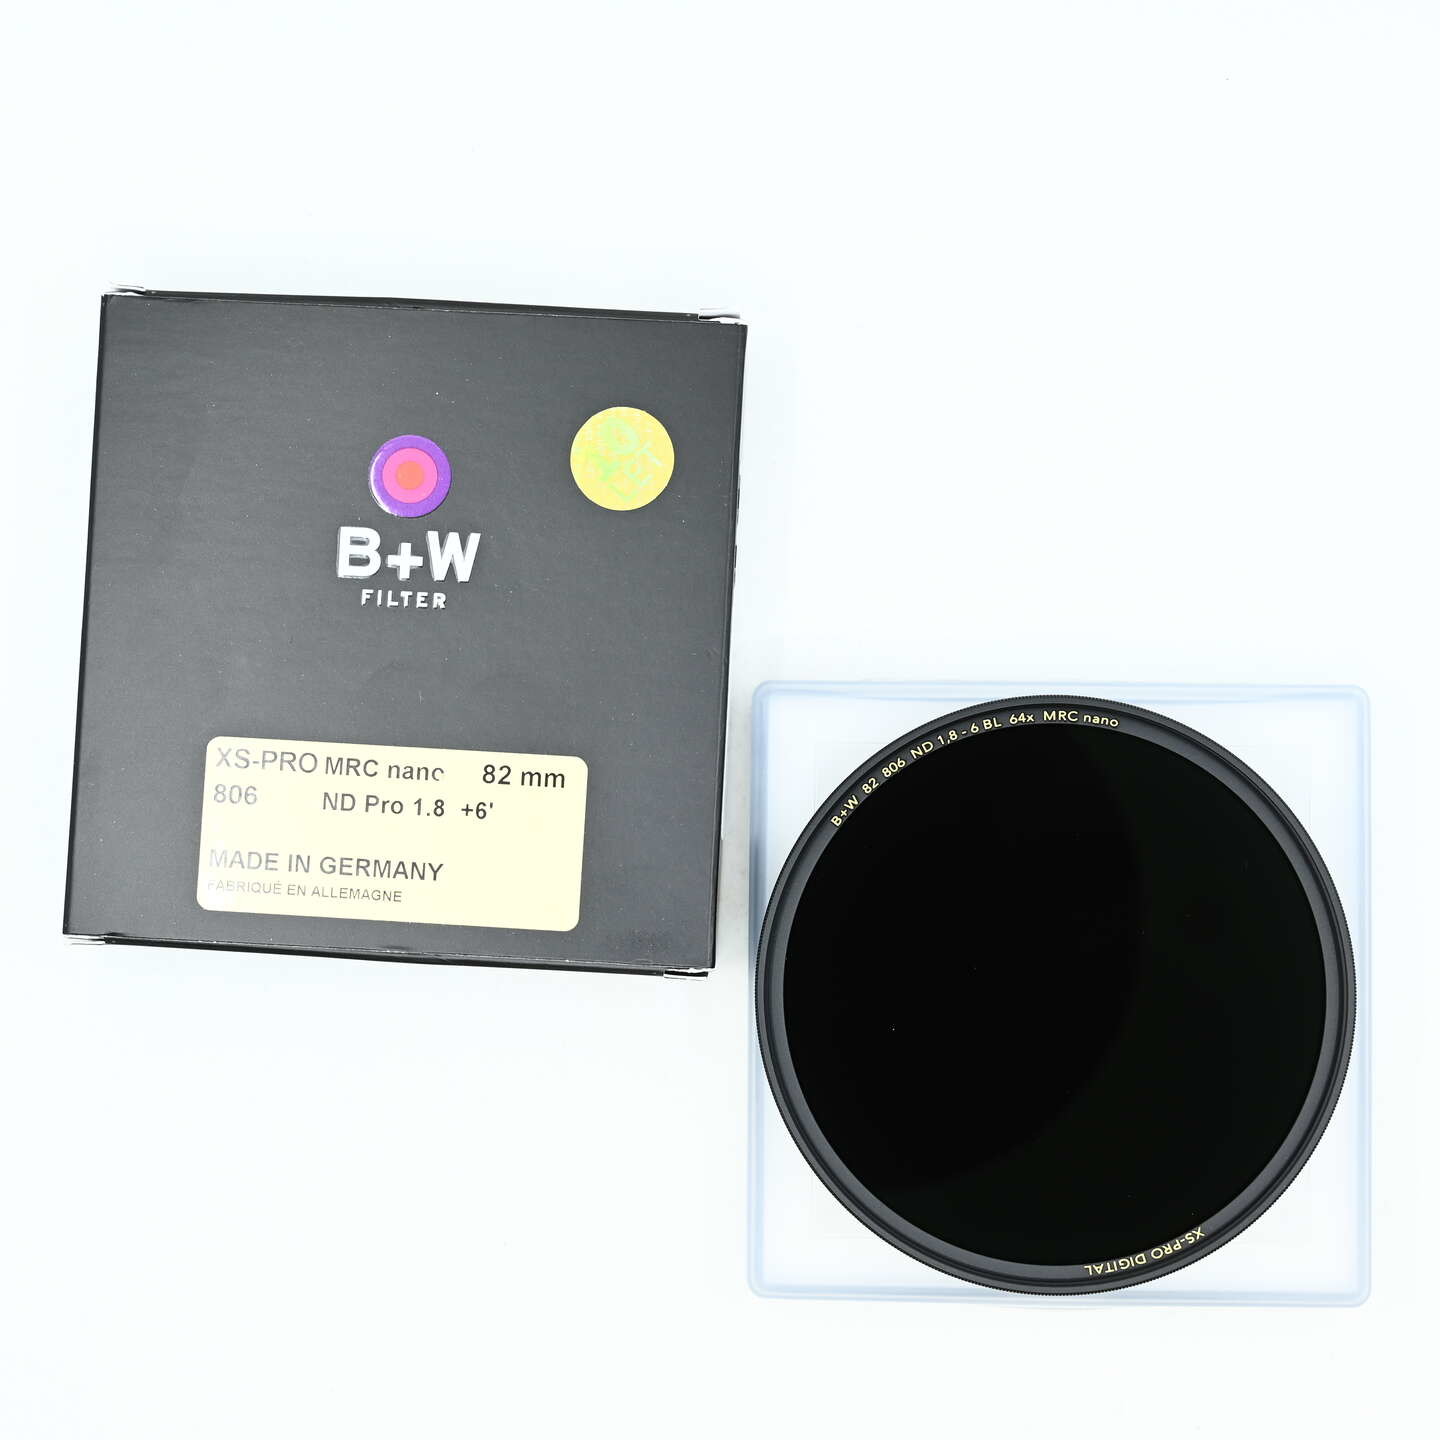 B+W 806 ND 1,8 filtr XS-PRO DIGTAL MRC nano 82 mm bazar